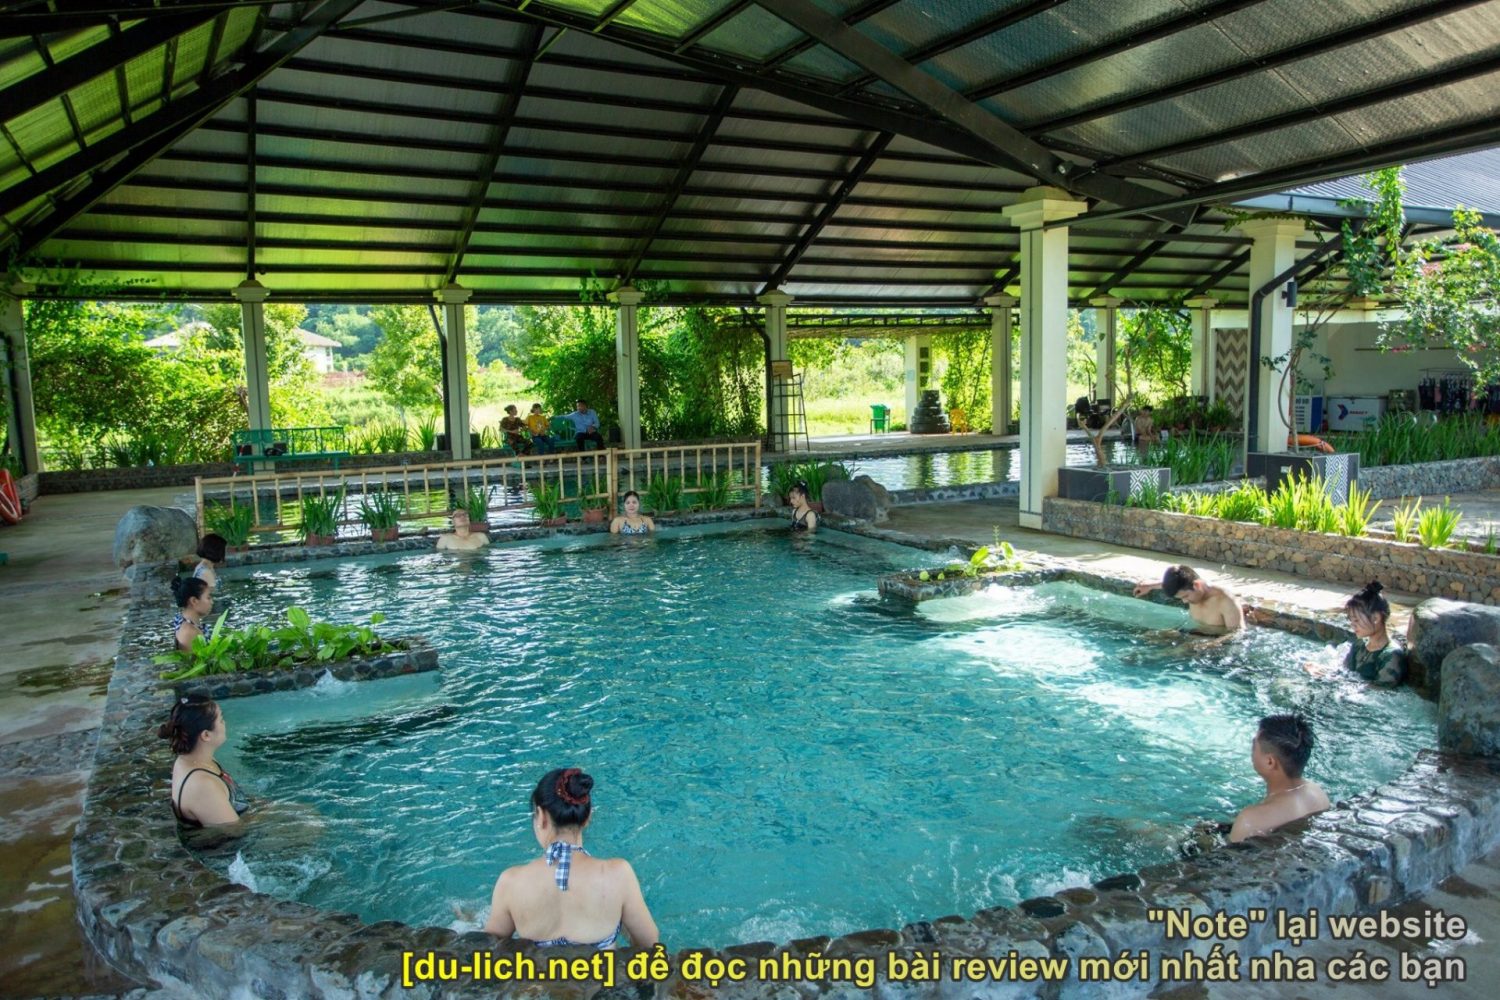 Hình ảnh bể tắm khoáng nóng tại An Lạc Resort Kim Bôi - Hòa Bình